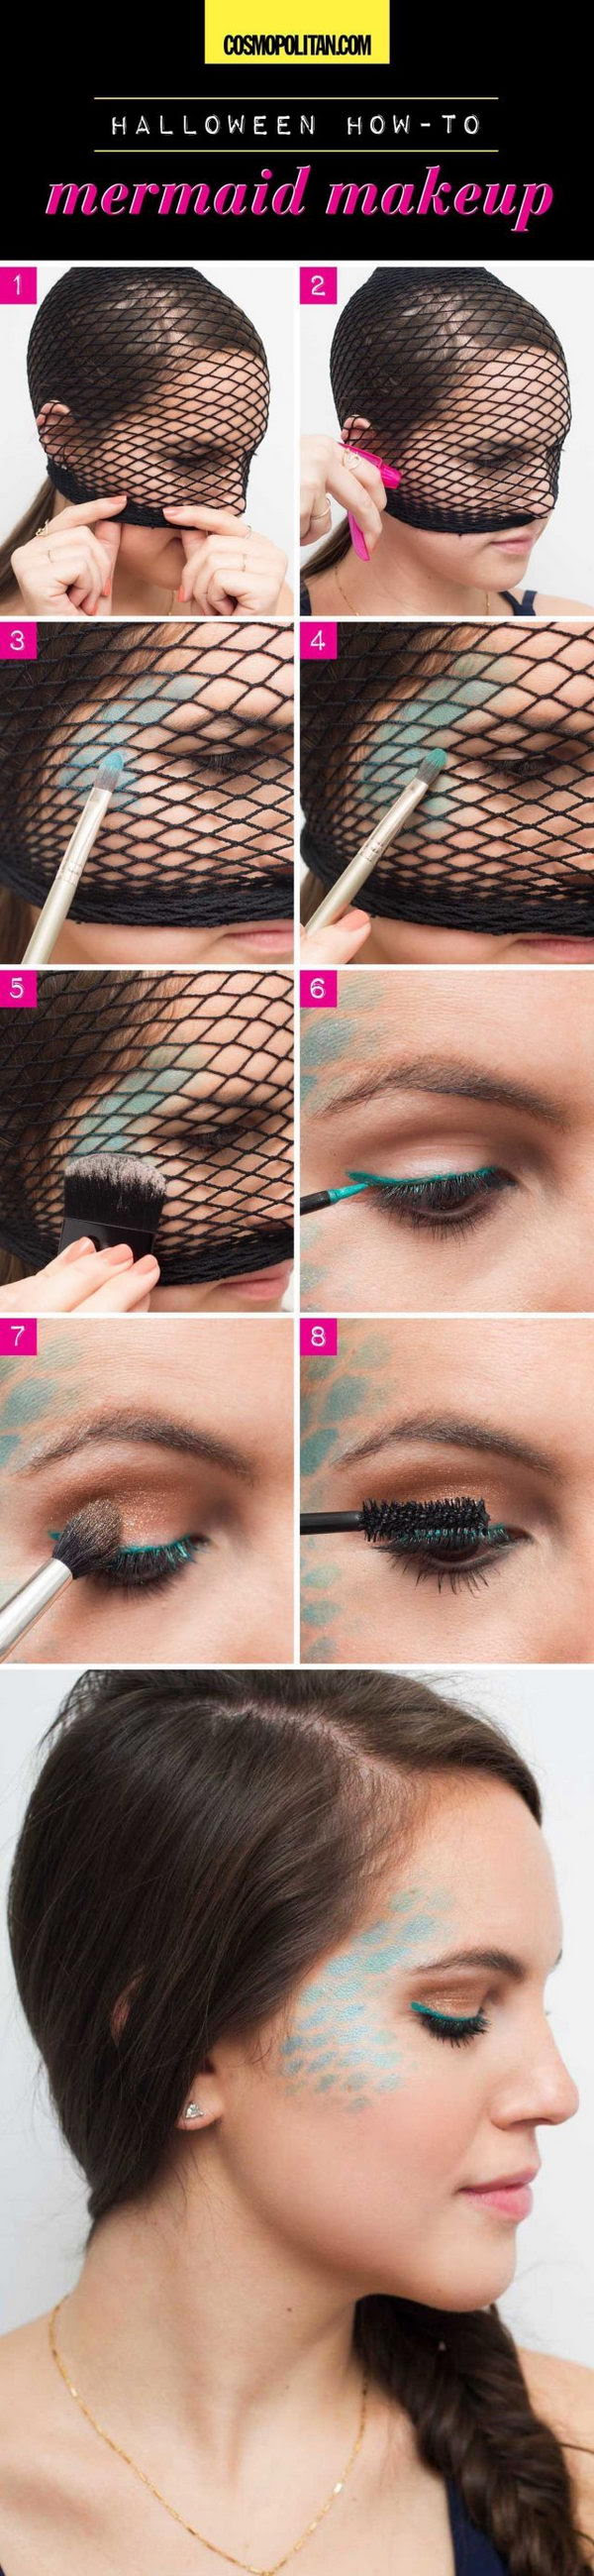 Cool halloween makeup tutorials